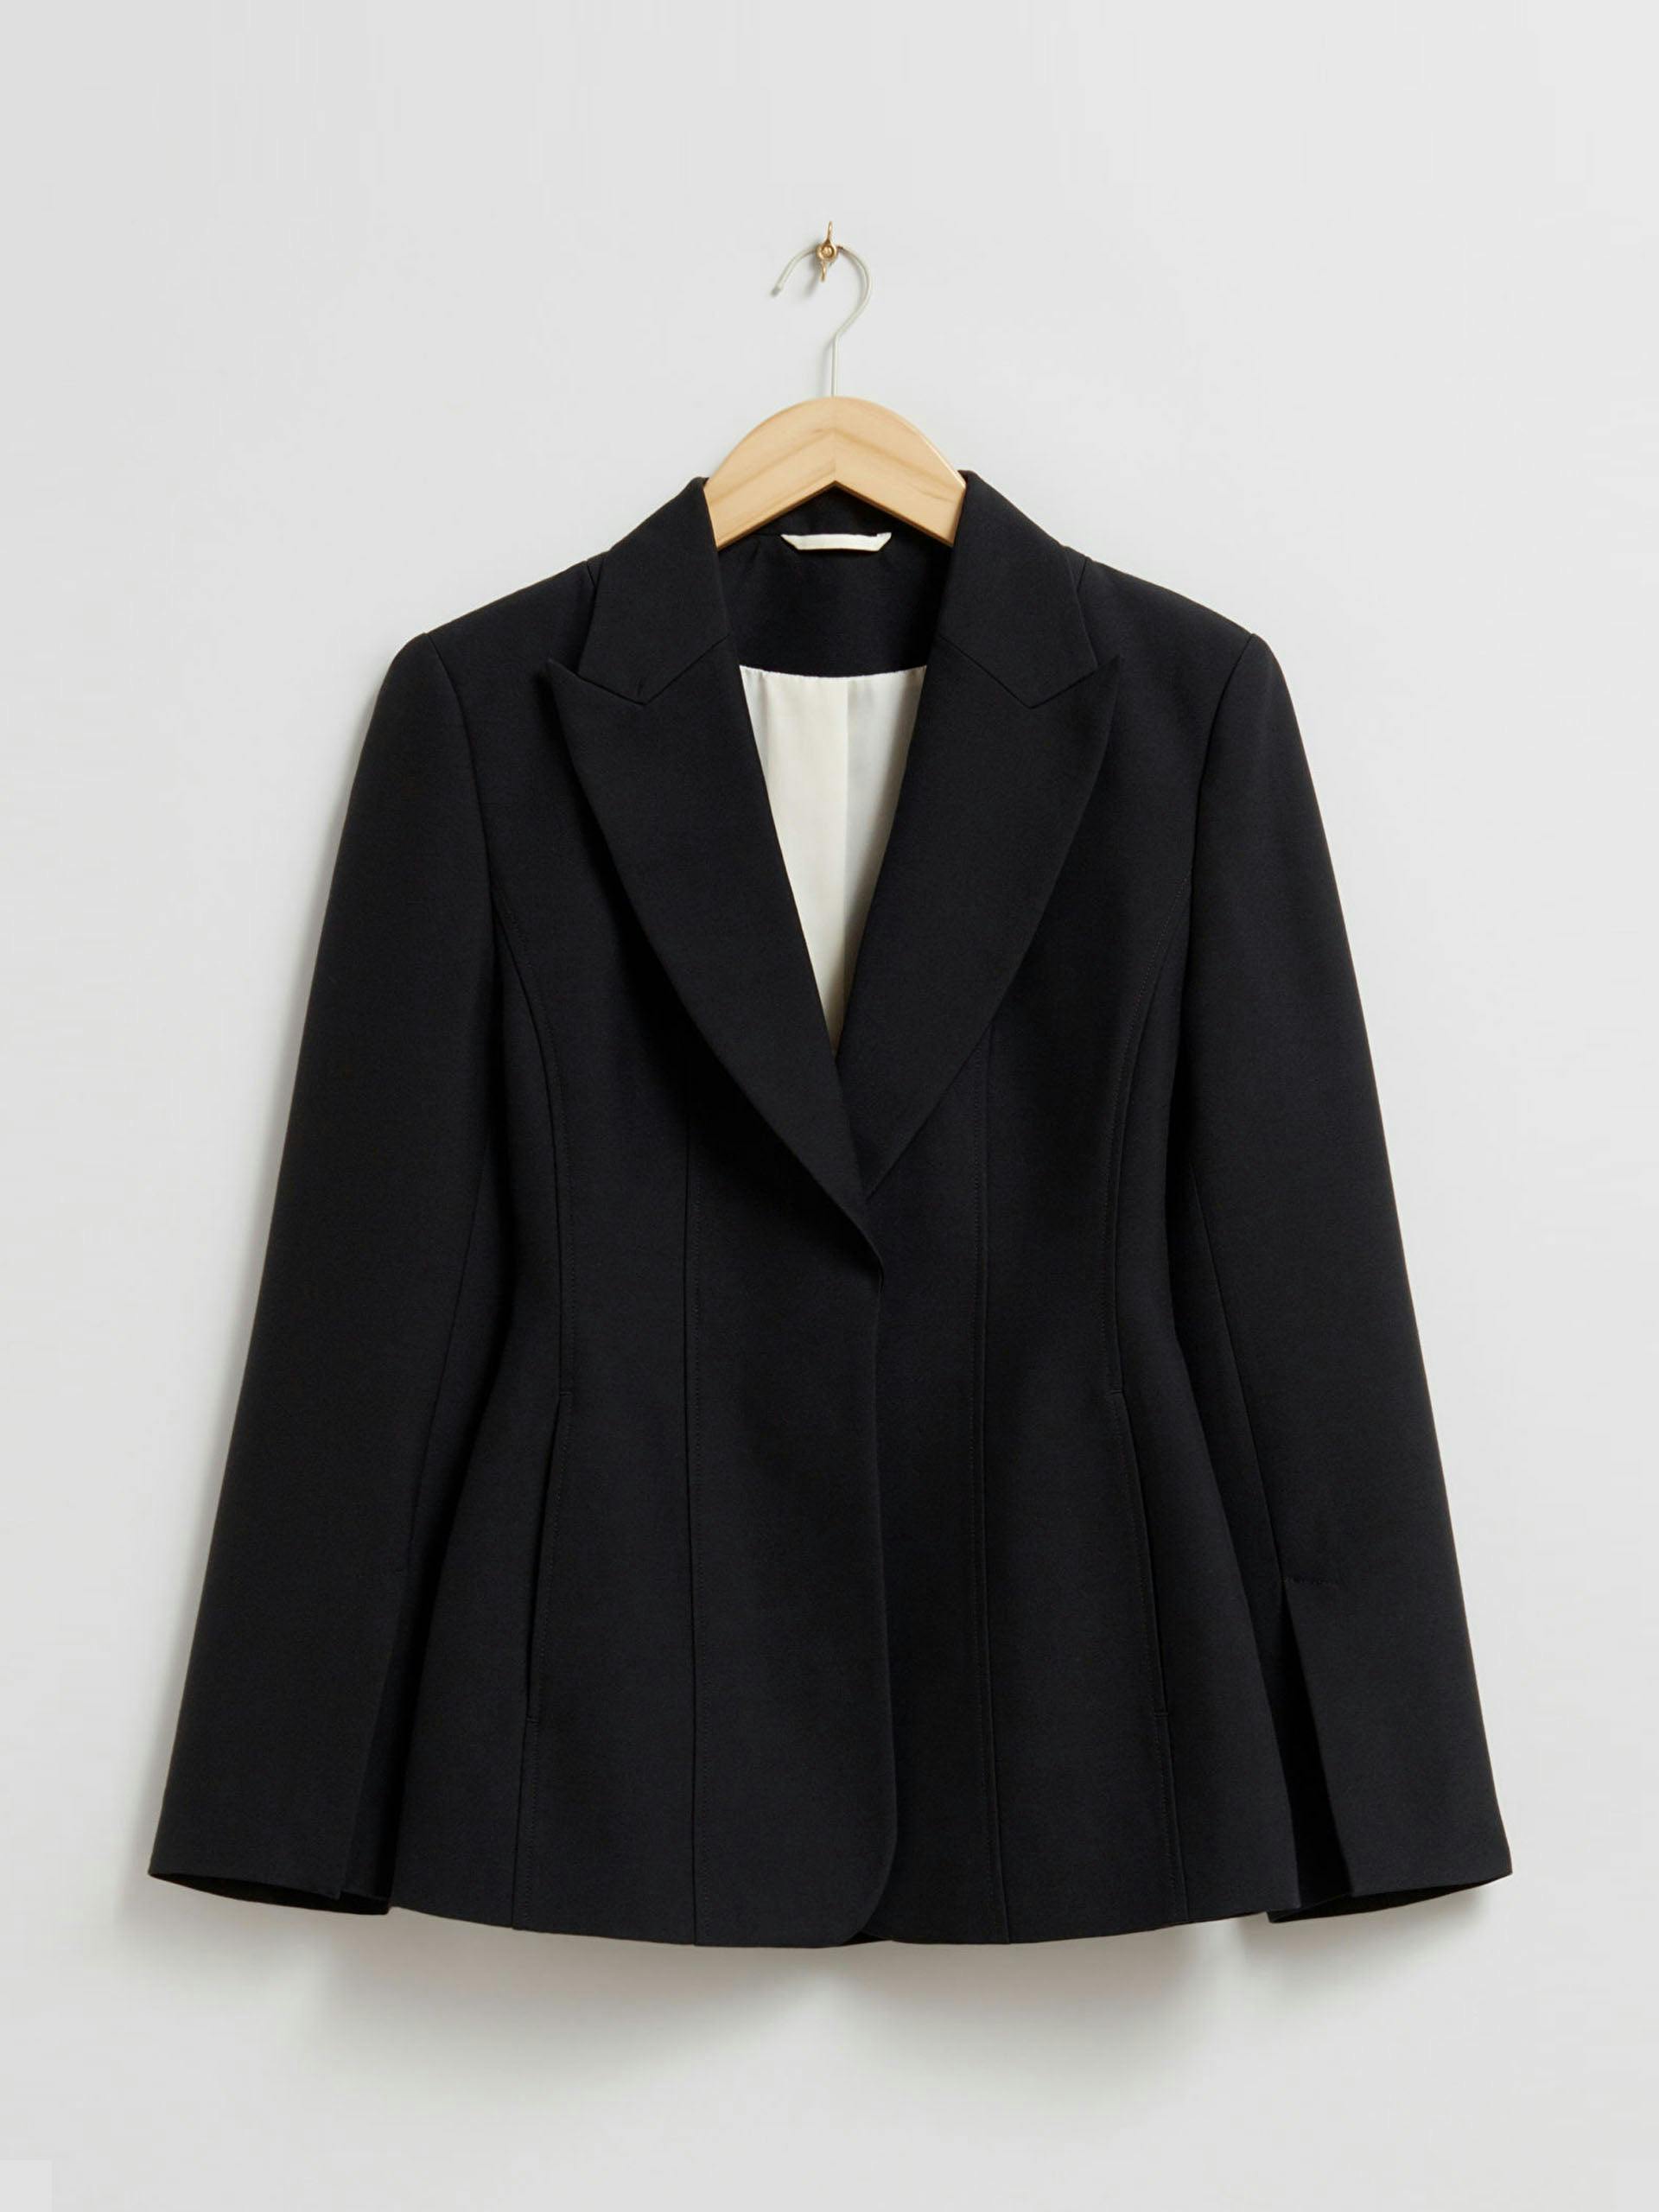 Structured black blazer